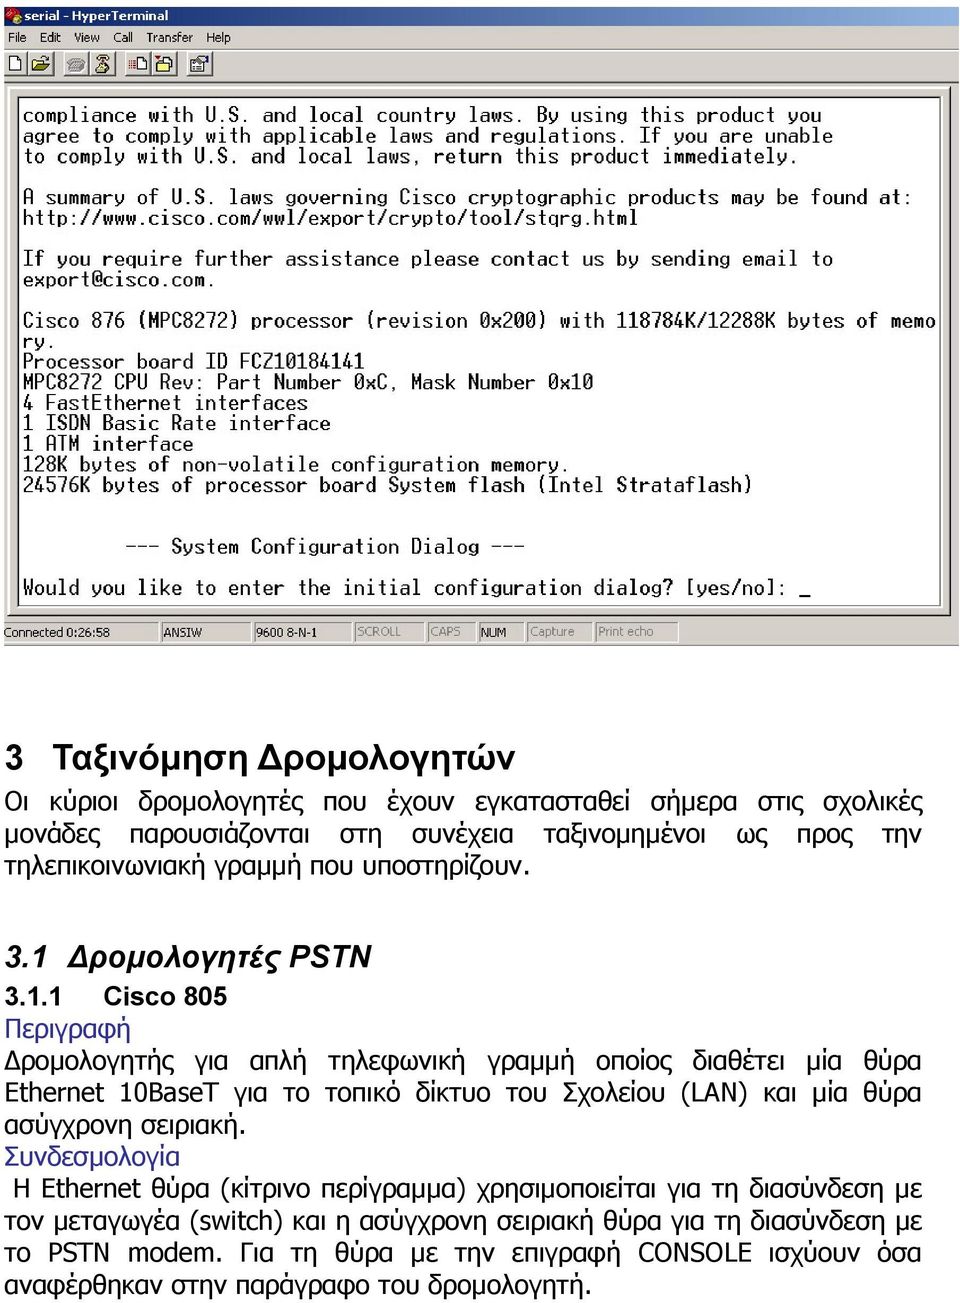 ροµολογητές PSTN 3.1.